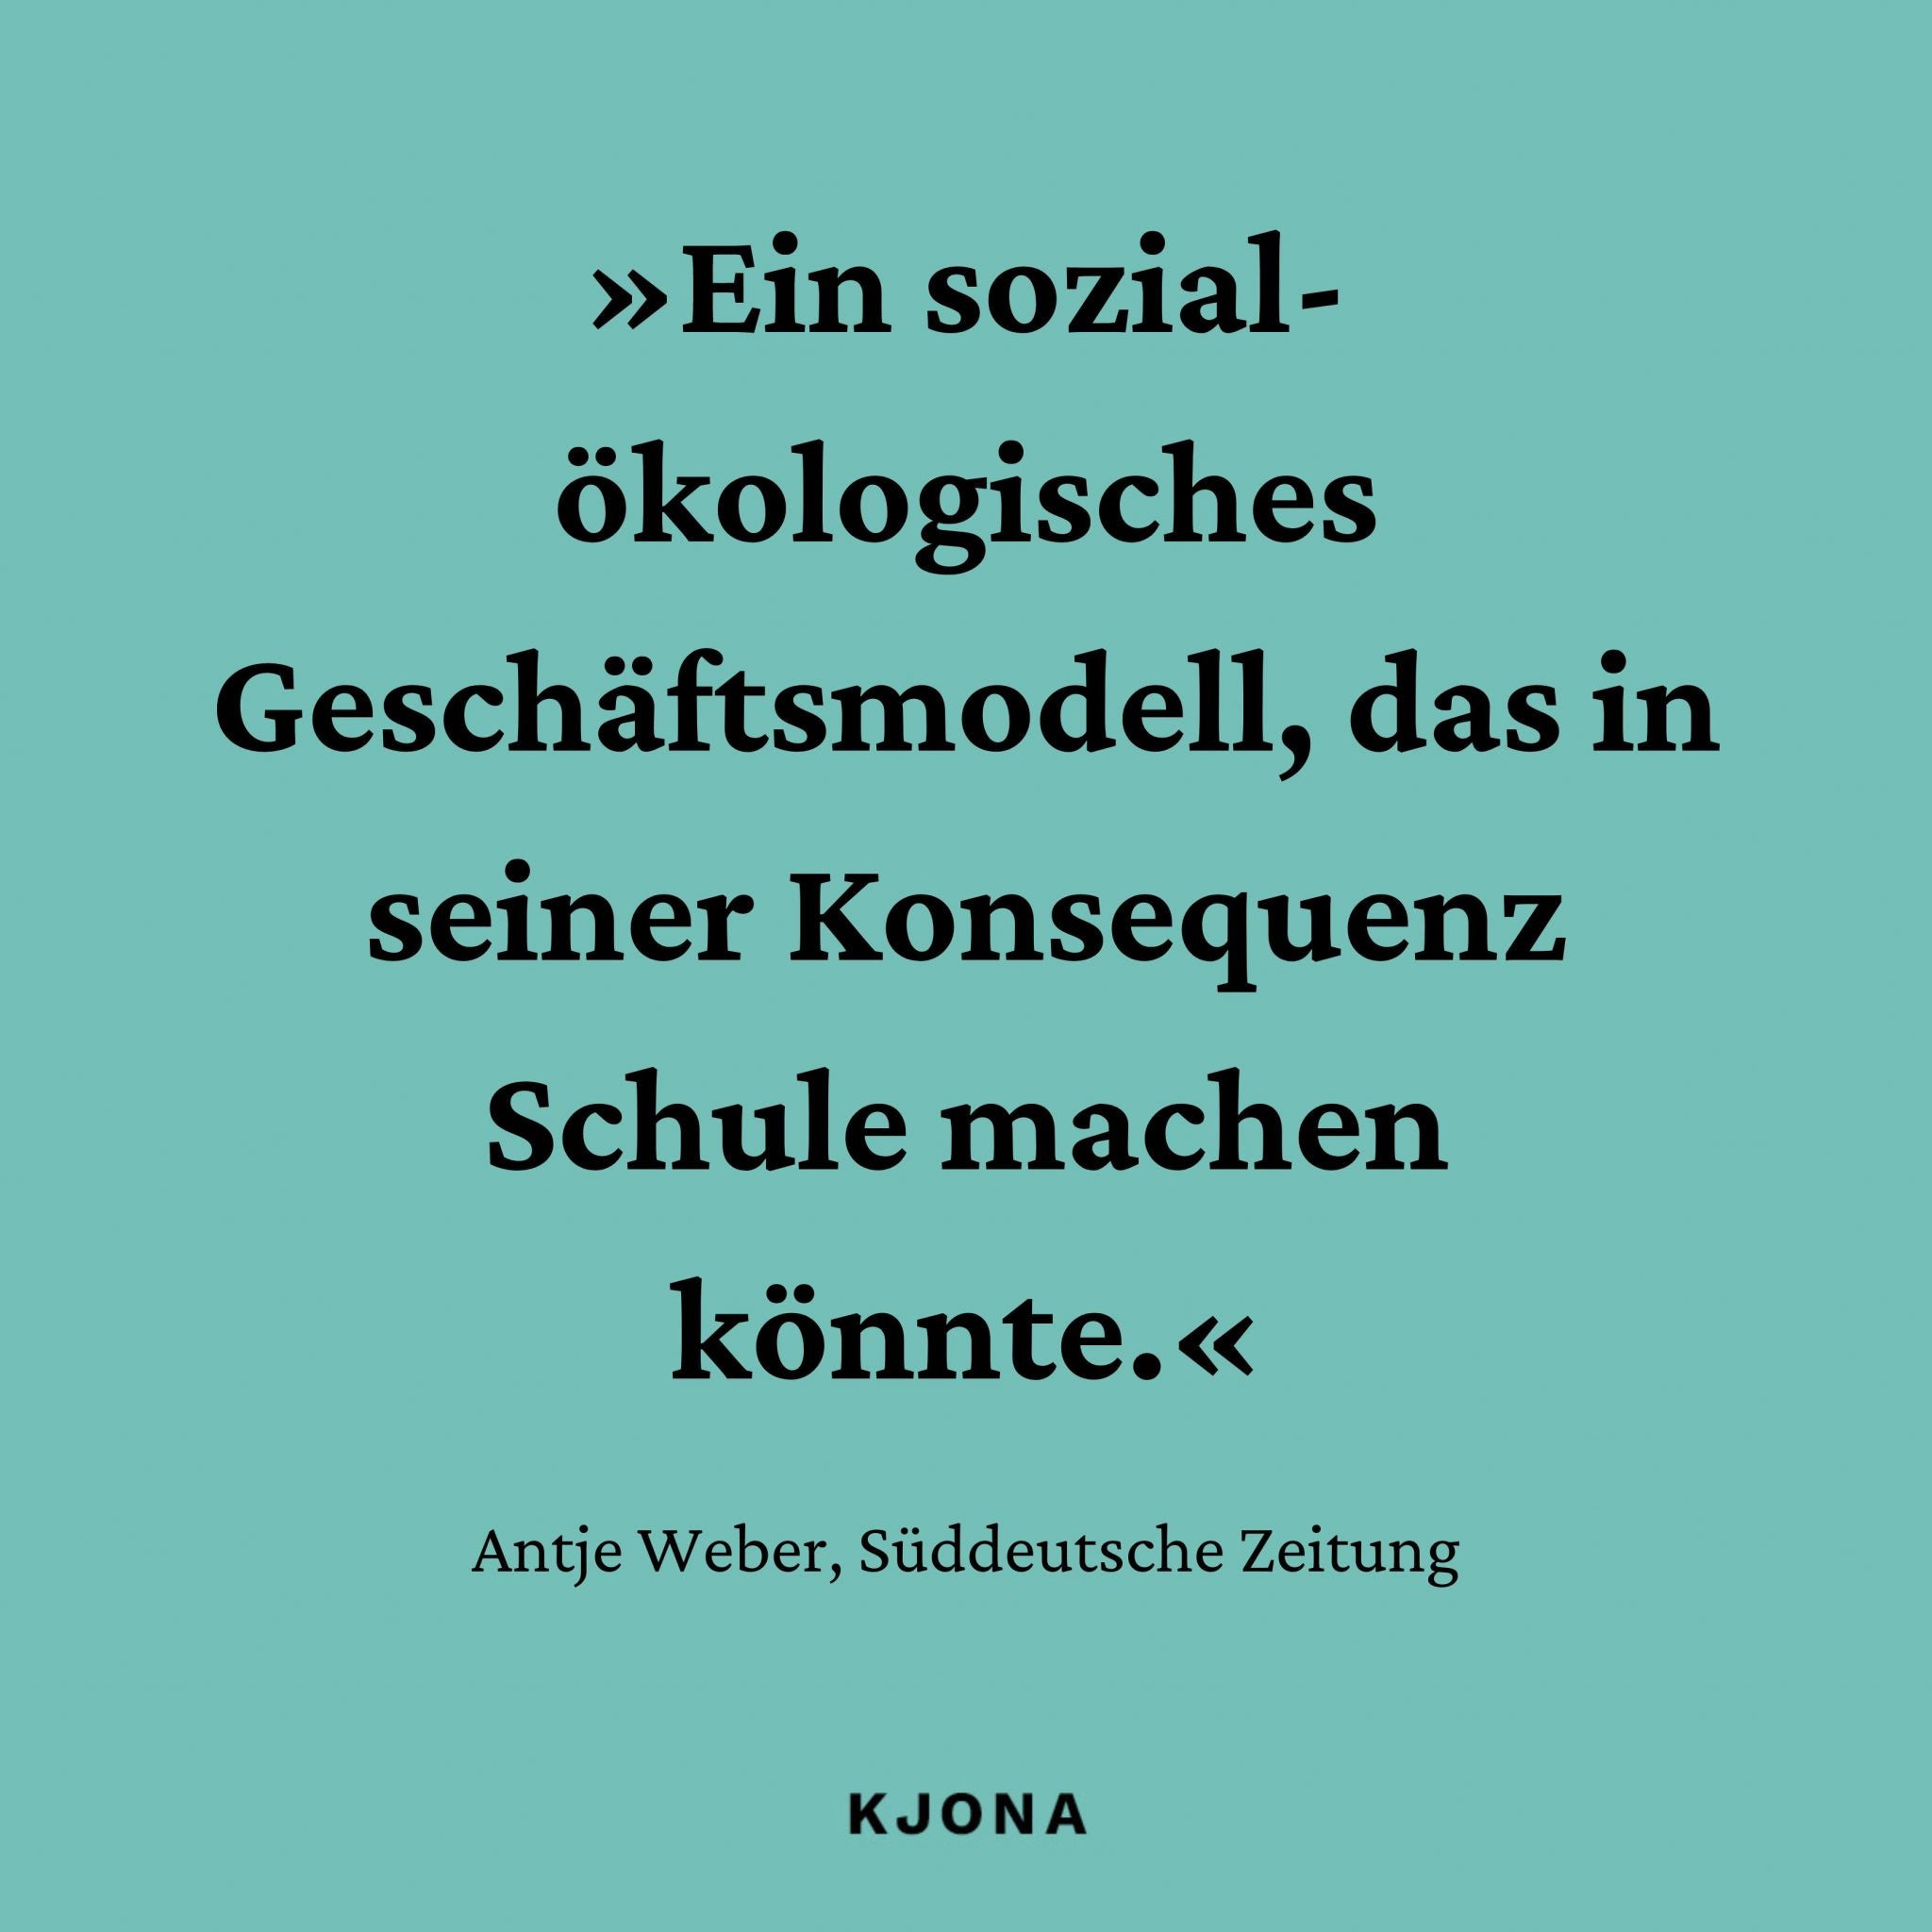 »Ein sozial-ökologisches Geschäftsmodell, das in einer Konsequenz Schule machen könnte.« Zitat von Antje Weber, Süddeutsche Zeitung